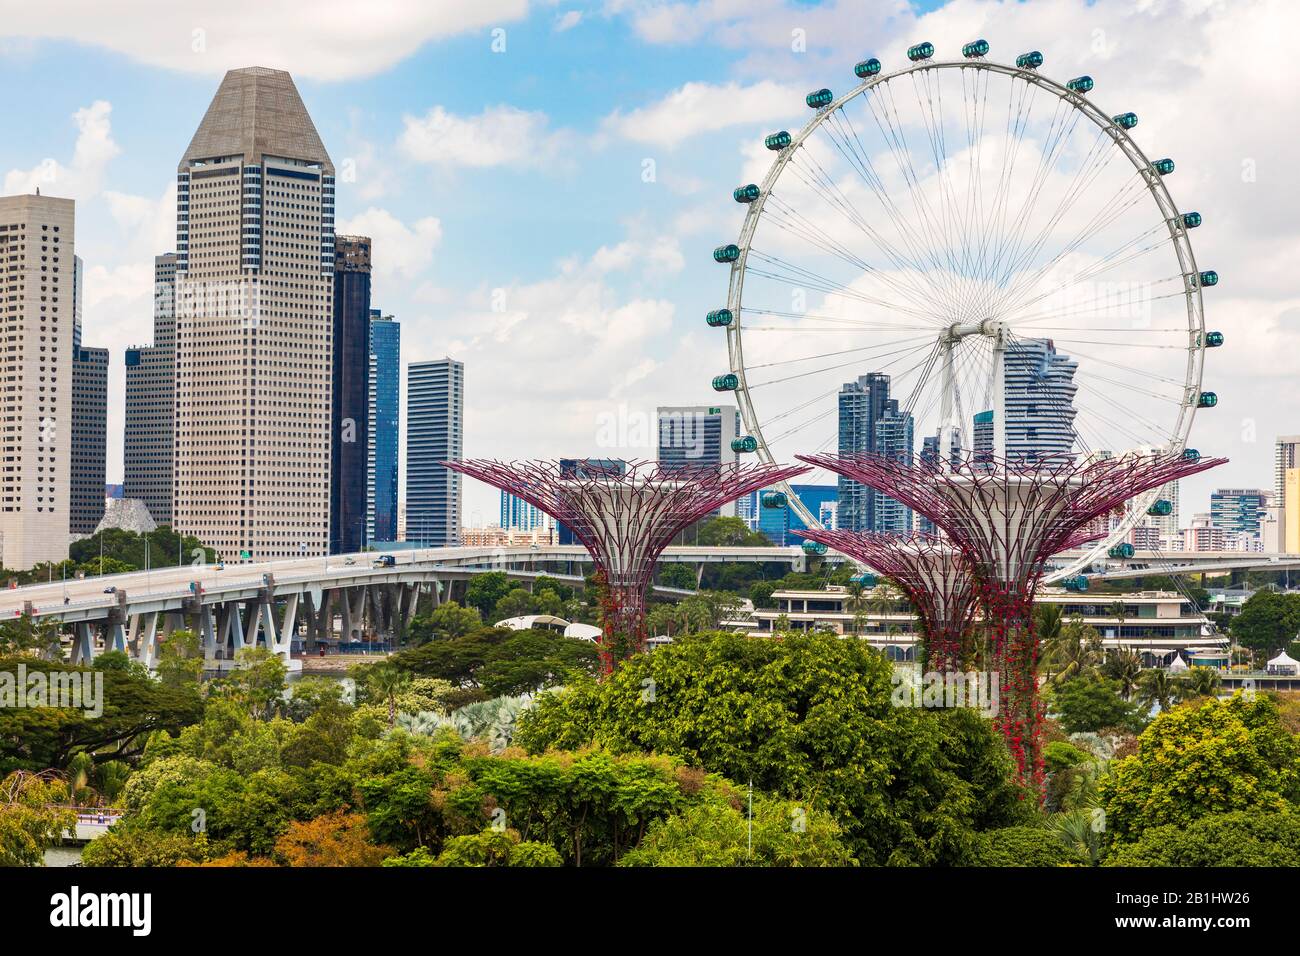 Blick auf die hoch aufragenden vertikalen Gärten und Superbäume in Gardens an der Bucht, Singapur, Asien gegen das Riesenrad, das Singapur-Flyer genannt wird Stockfoto